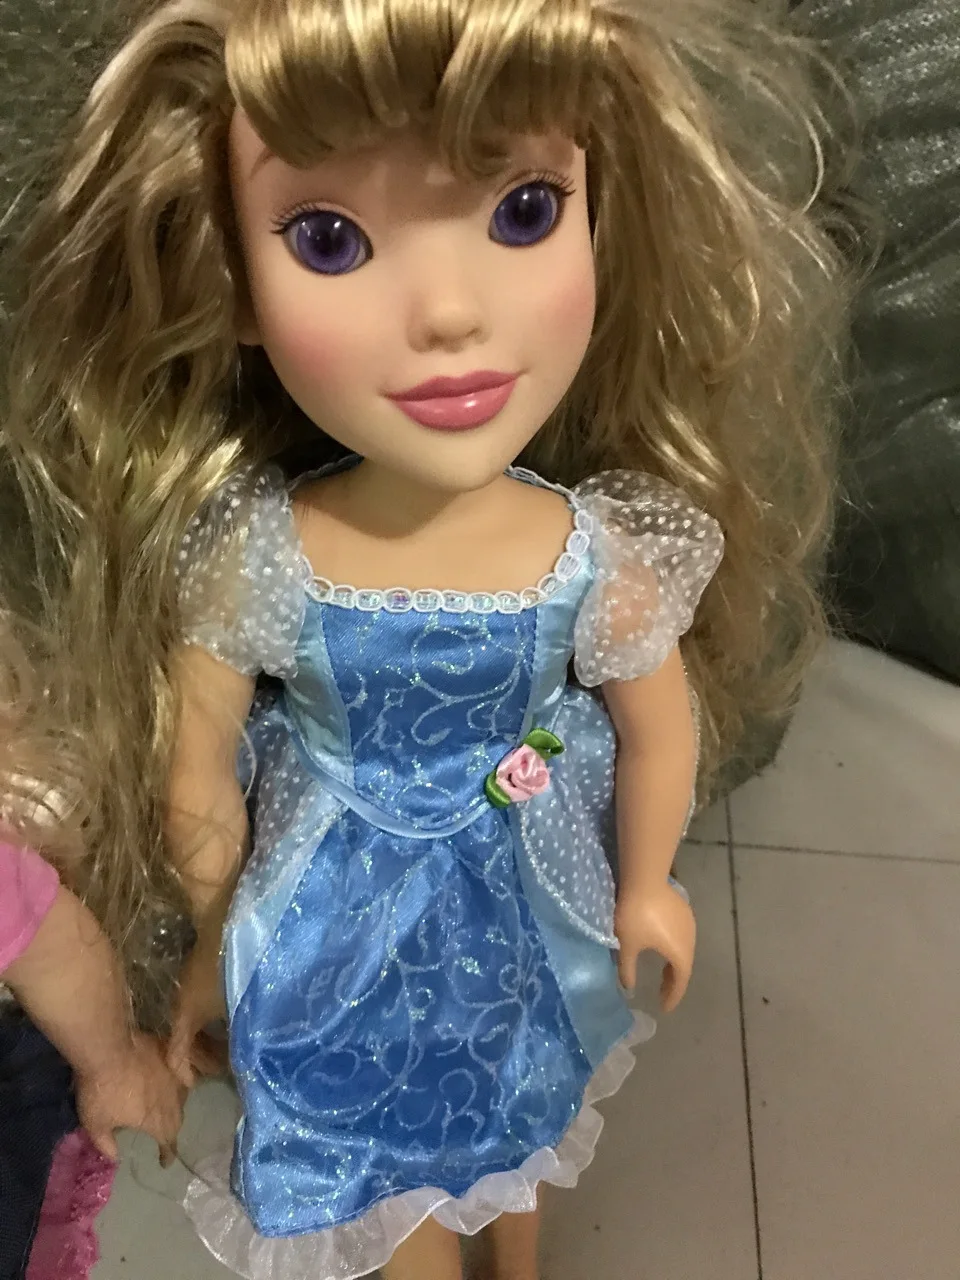 50 см оригинальная большая кукла Золушка Принцесса игрушка стеклянные глаза суставы Принцесса Кукла Коллекция девочка подарок на день рождения